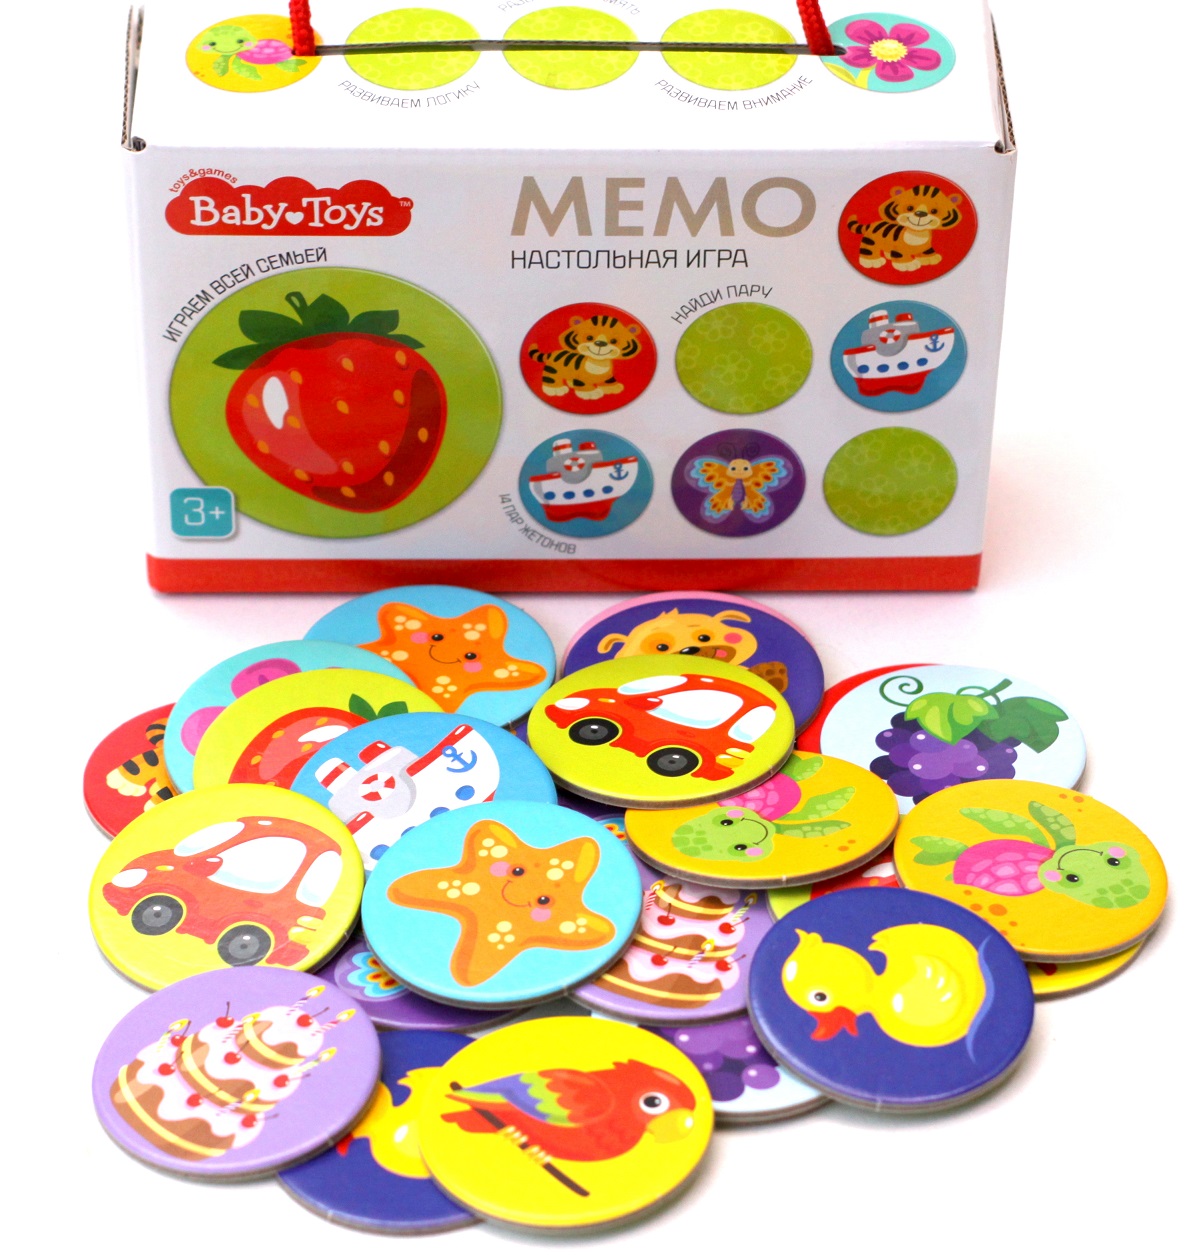 Настольная игра "Мемо" серия Baby Toys Десятое Королевство 04050ДК